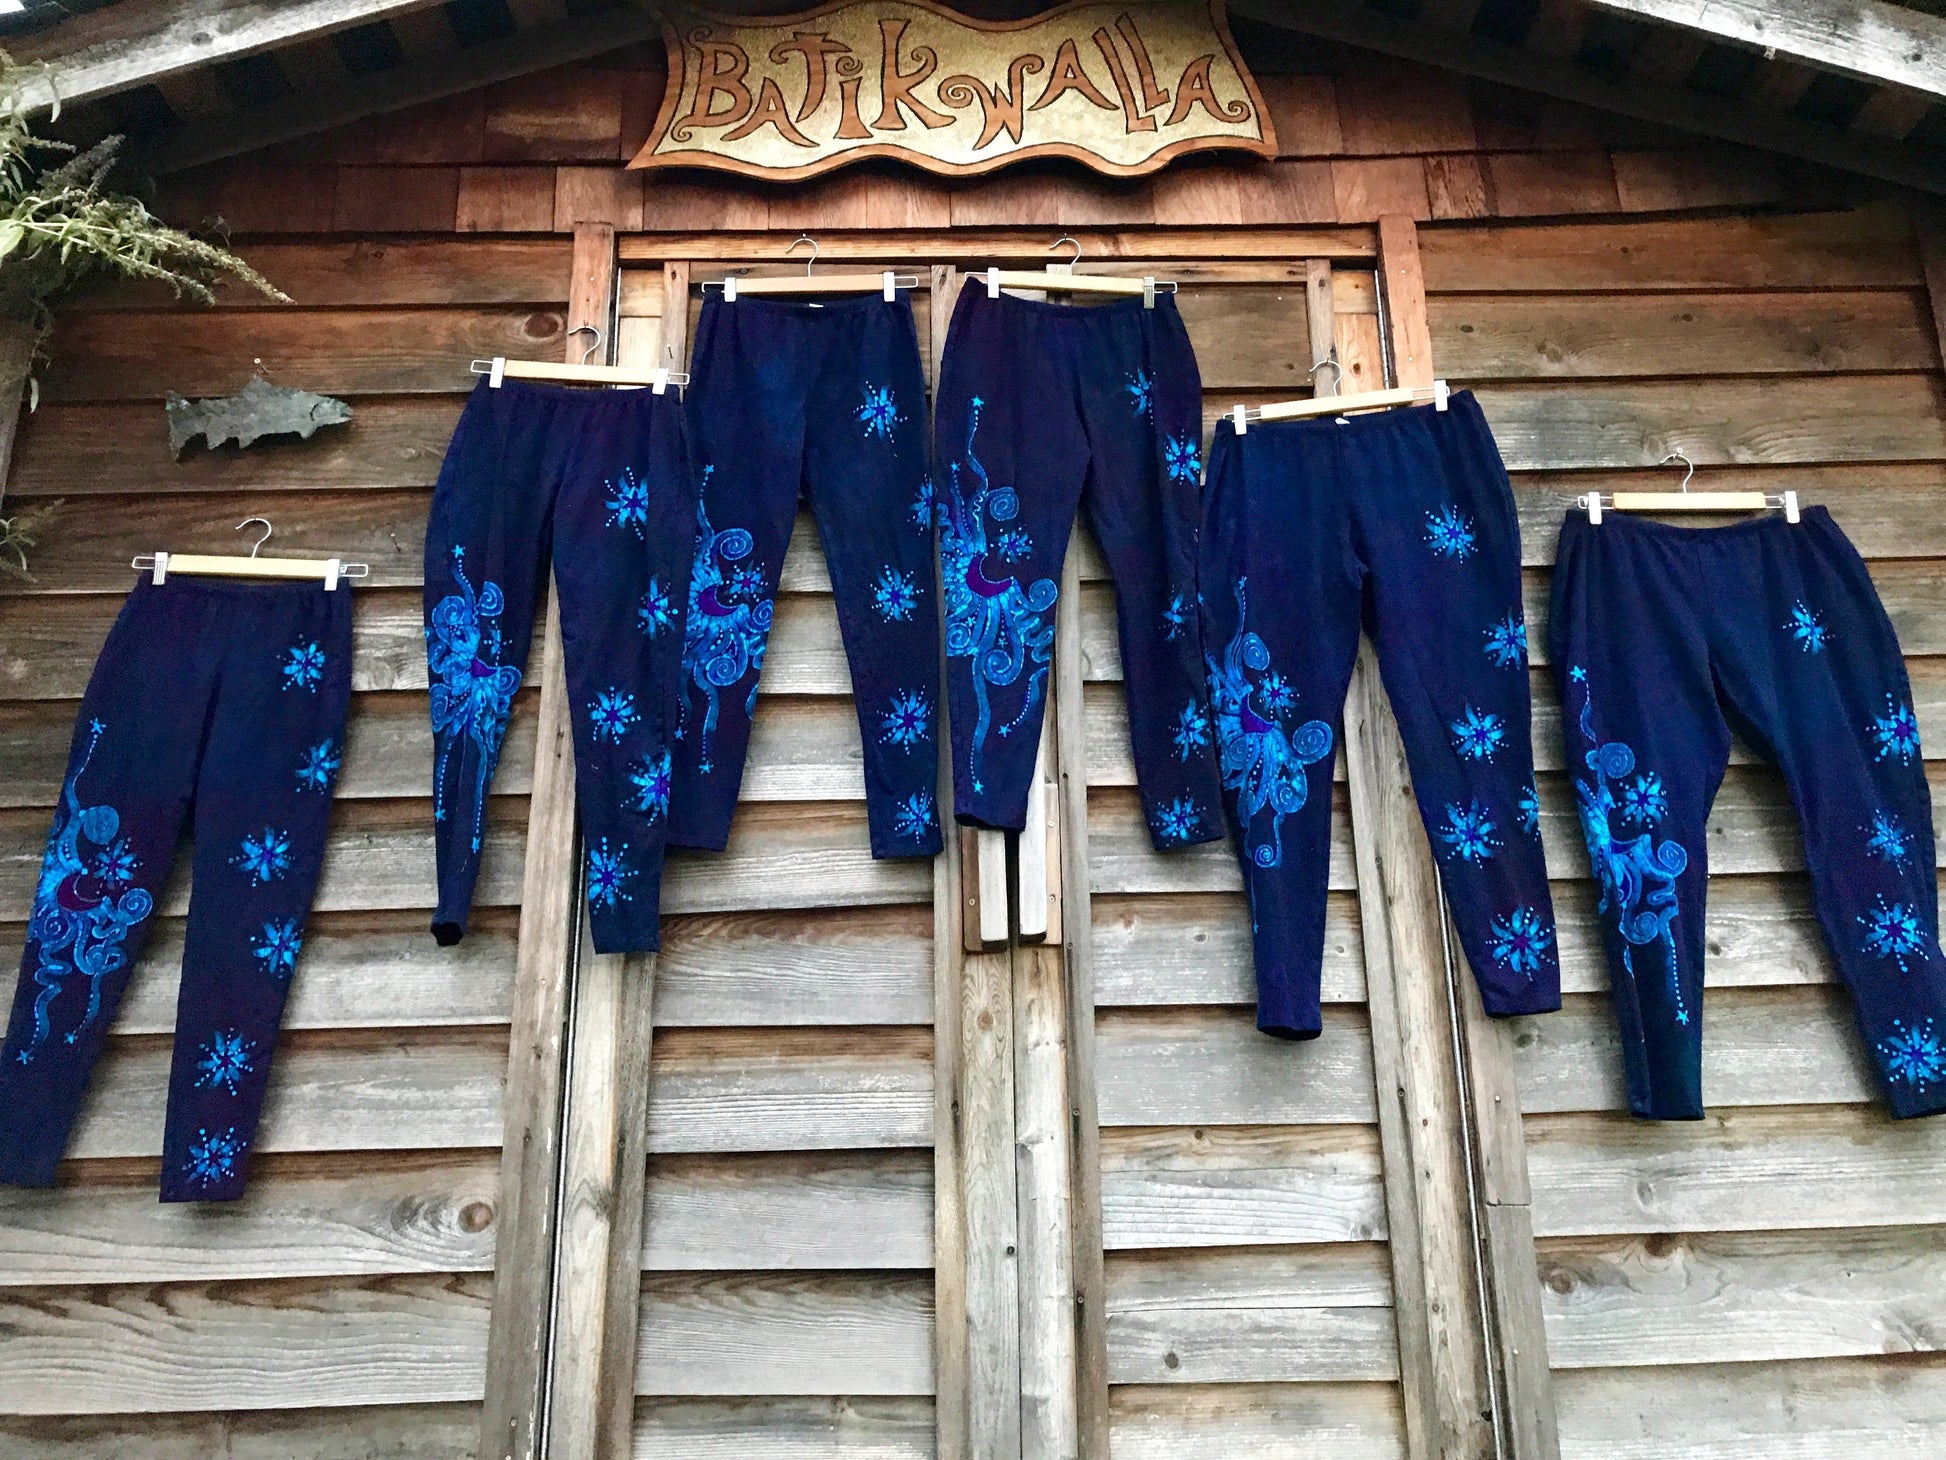 Draft of Deep Purple and Turquoise Moon & Star Batik Leggings leggings batikwalla 